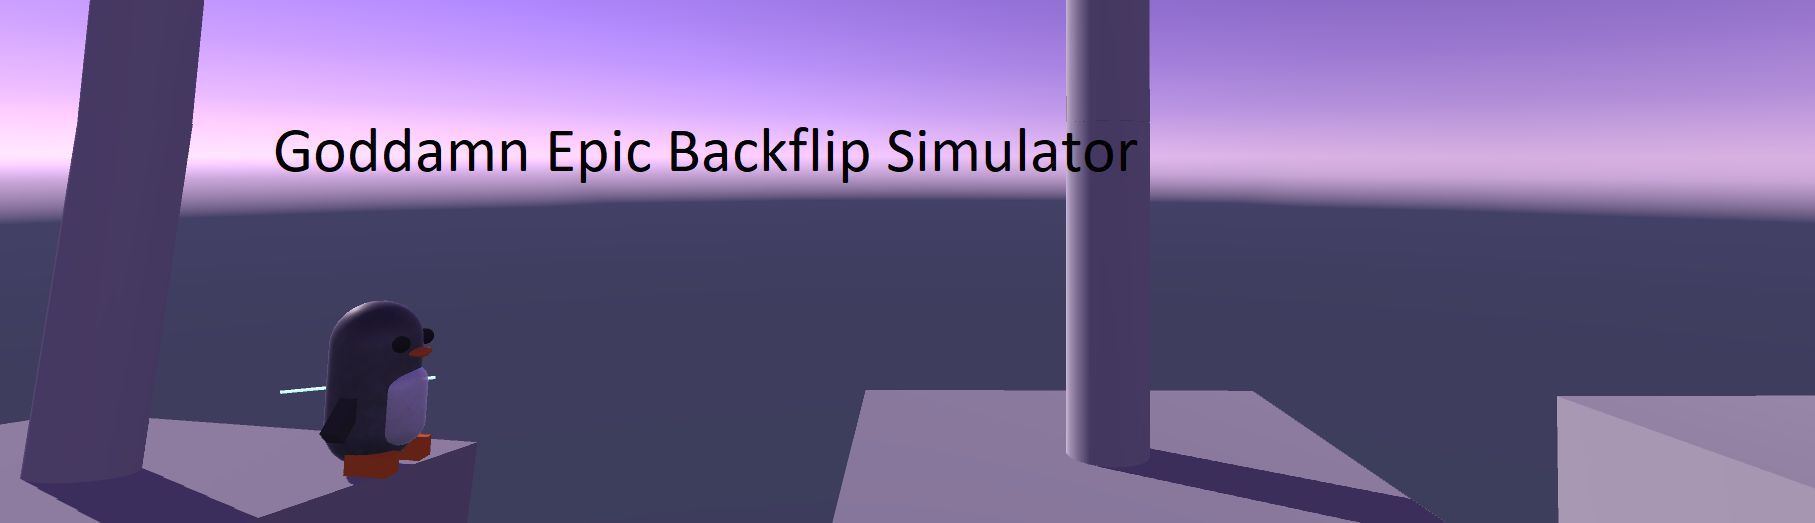 Goddamn Epic Backflip Simulator